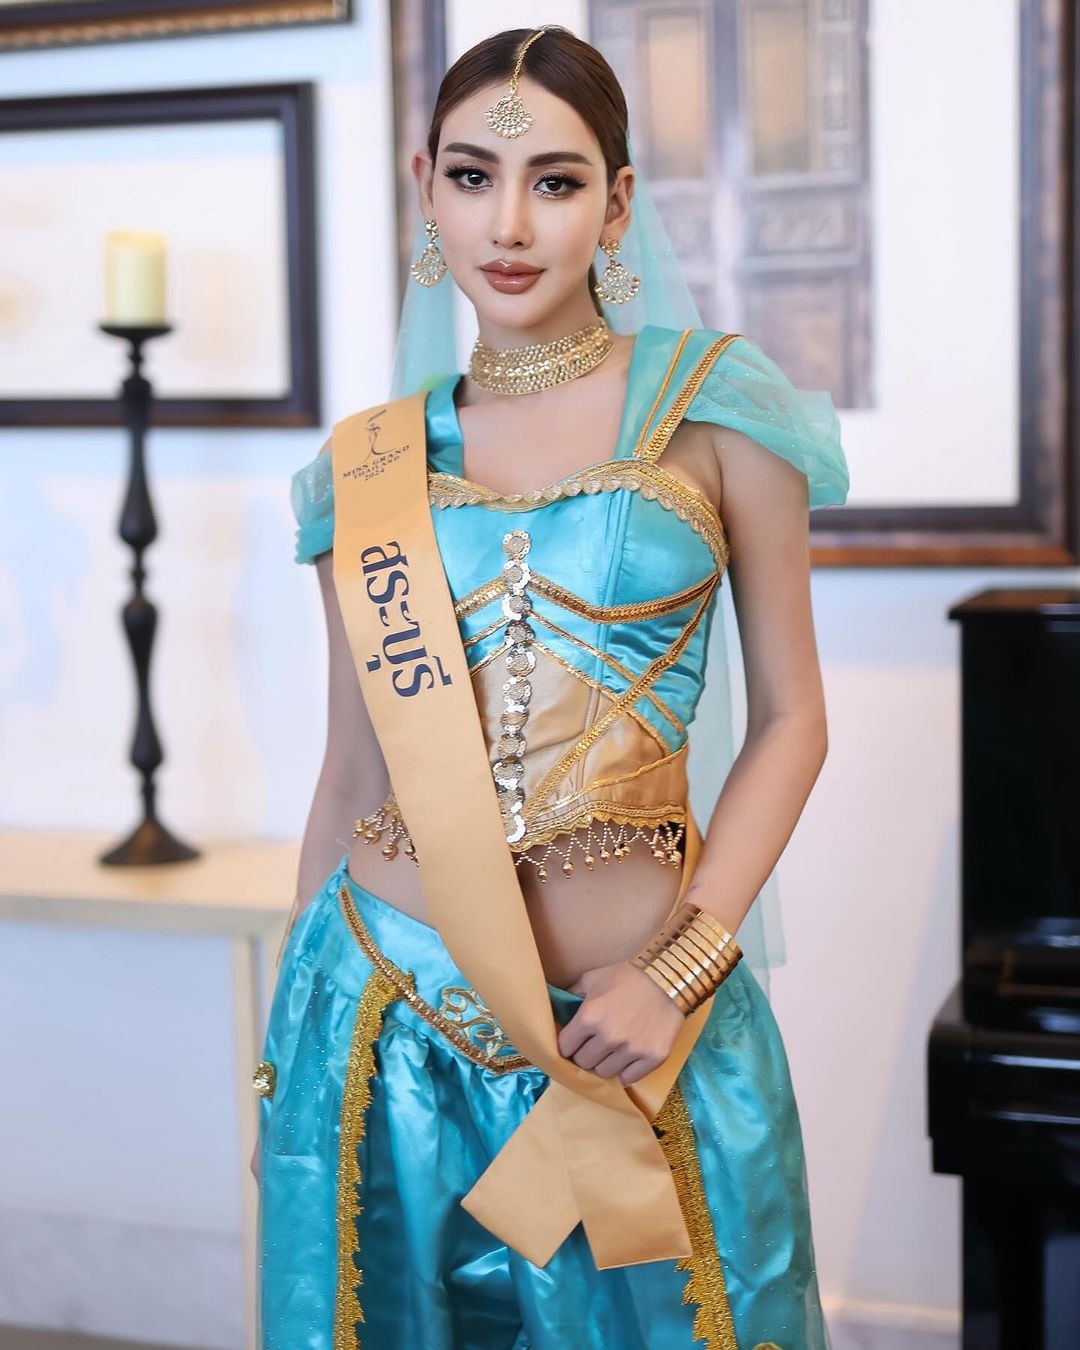 Người đẹp cao 1,76 m gây chú ý ở Hoa hậu Hòa bình Thái Lan ảnh 21